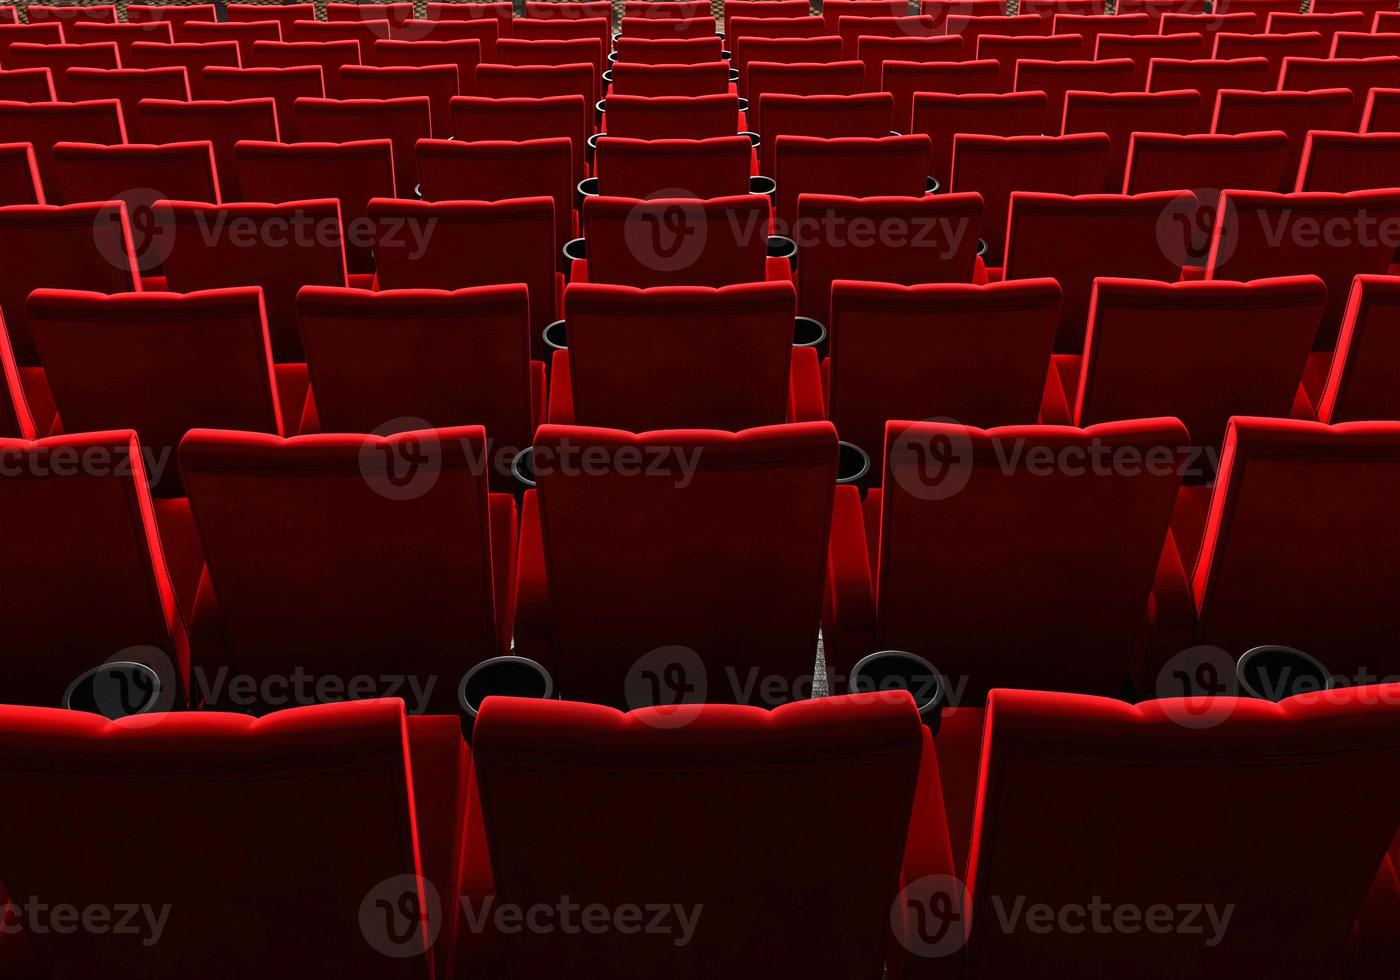 rijen rood fluwelen stoelen kijken naar films in de bioscoop met kopie ruimte banner achtergrond. entertainment- en theaterconcept. 3D illustratie weergave foto